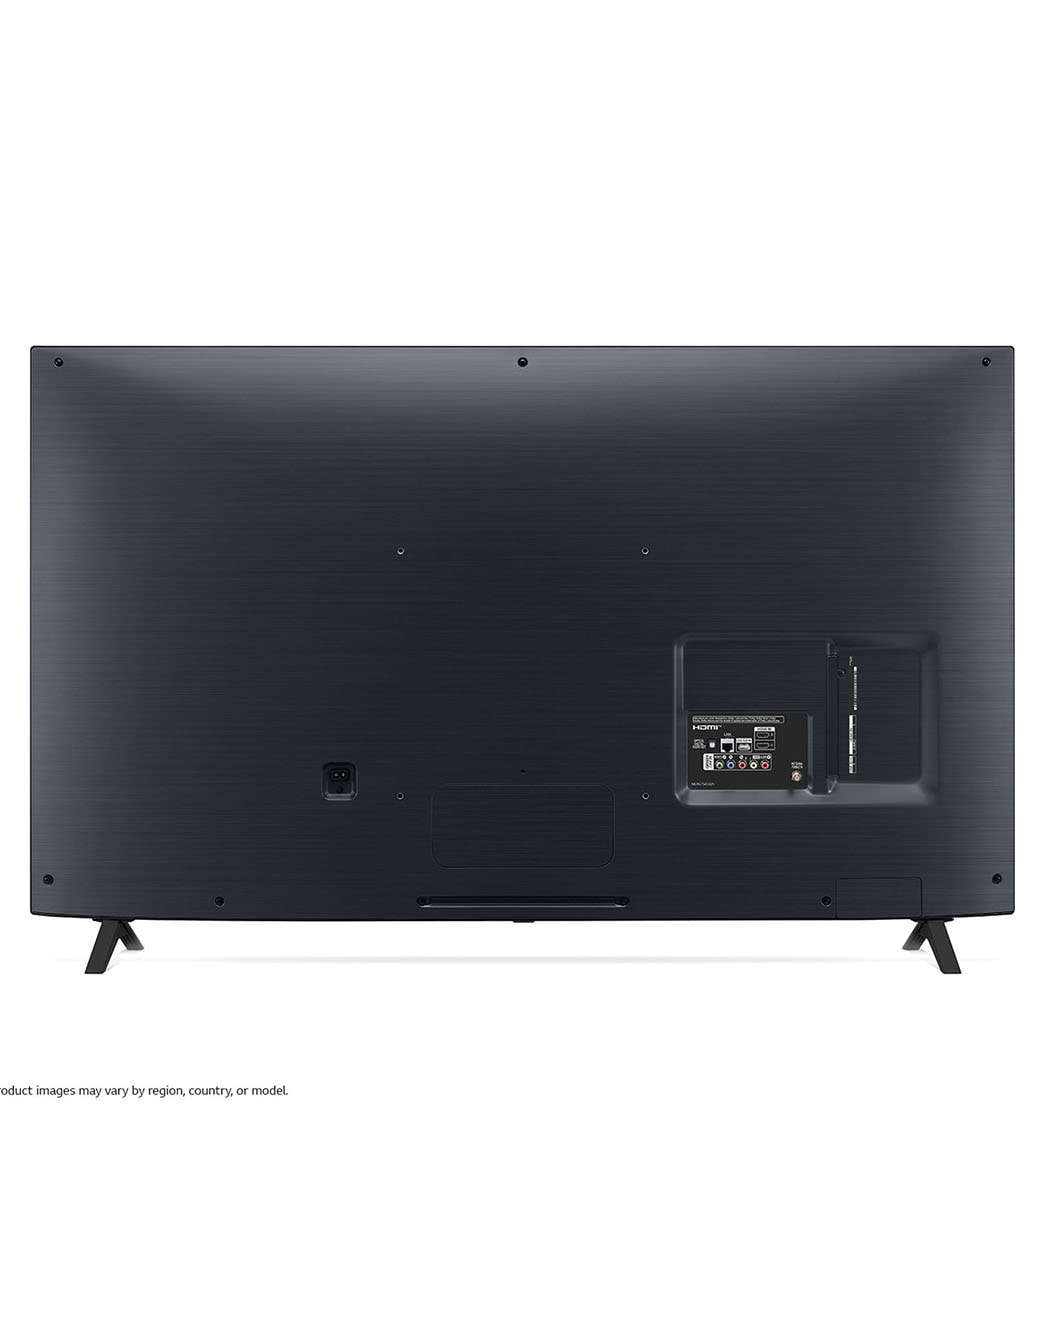 LG NanoCell 65'' NANO80 4K Smart TV